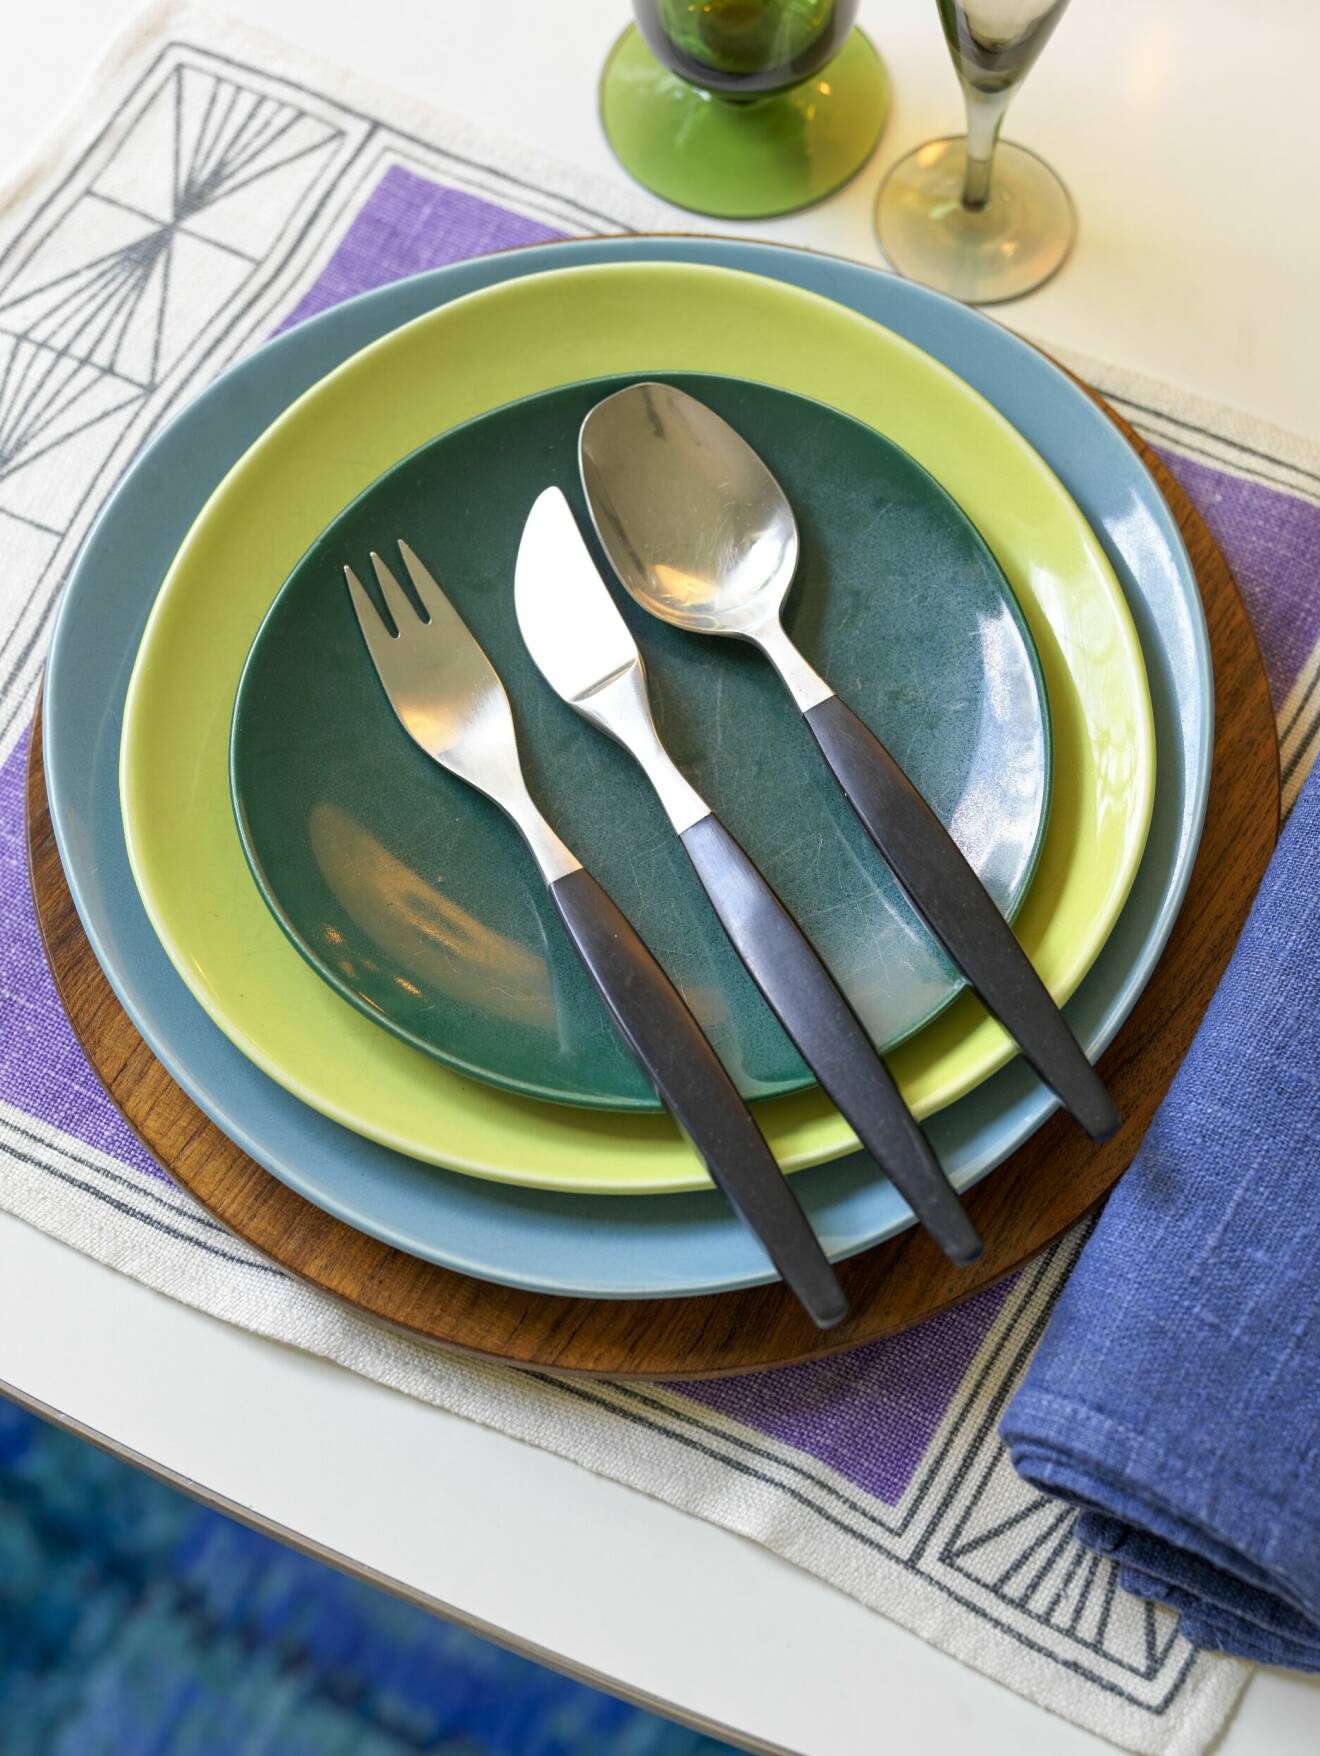 Tre tallrikar i ljusblått, limegrnt och mörkgrönt staplade, gaffel, kniv och sked med svarta handtag ligger på tallrikarna.